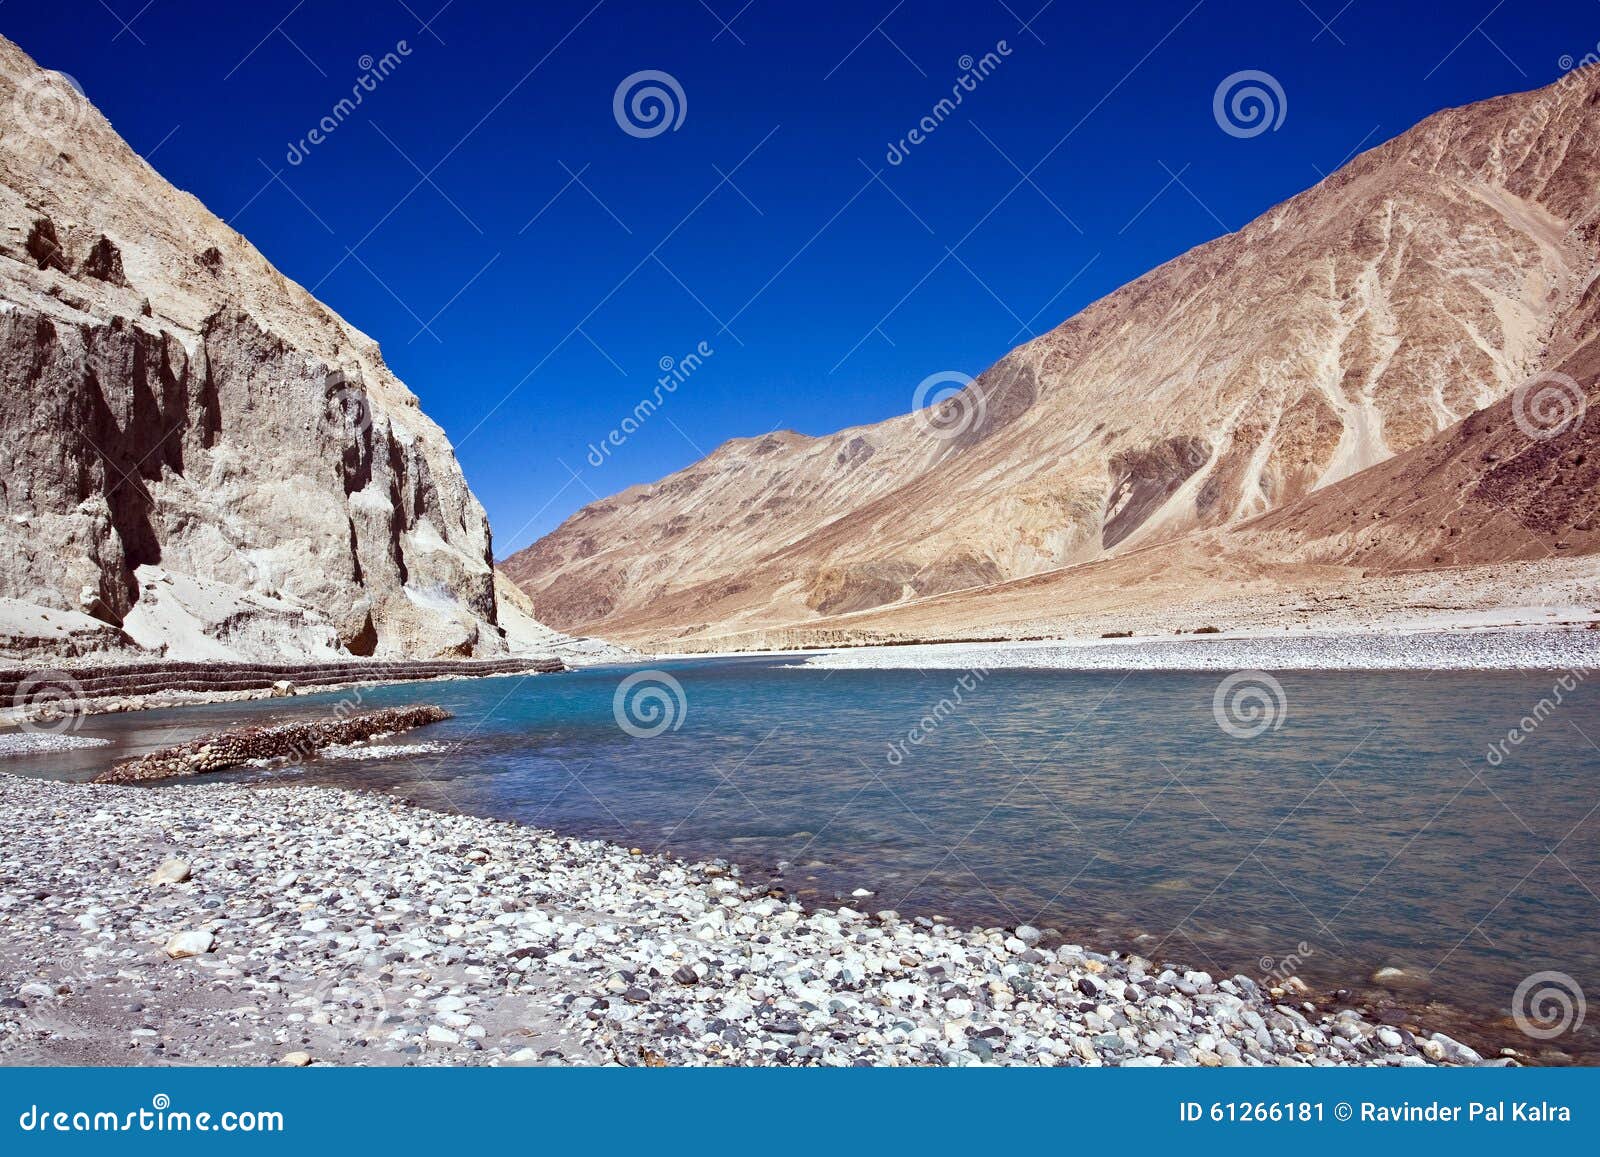 shyok river, nubra valley, ladakh, india